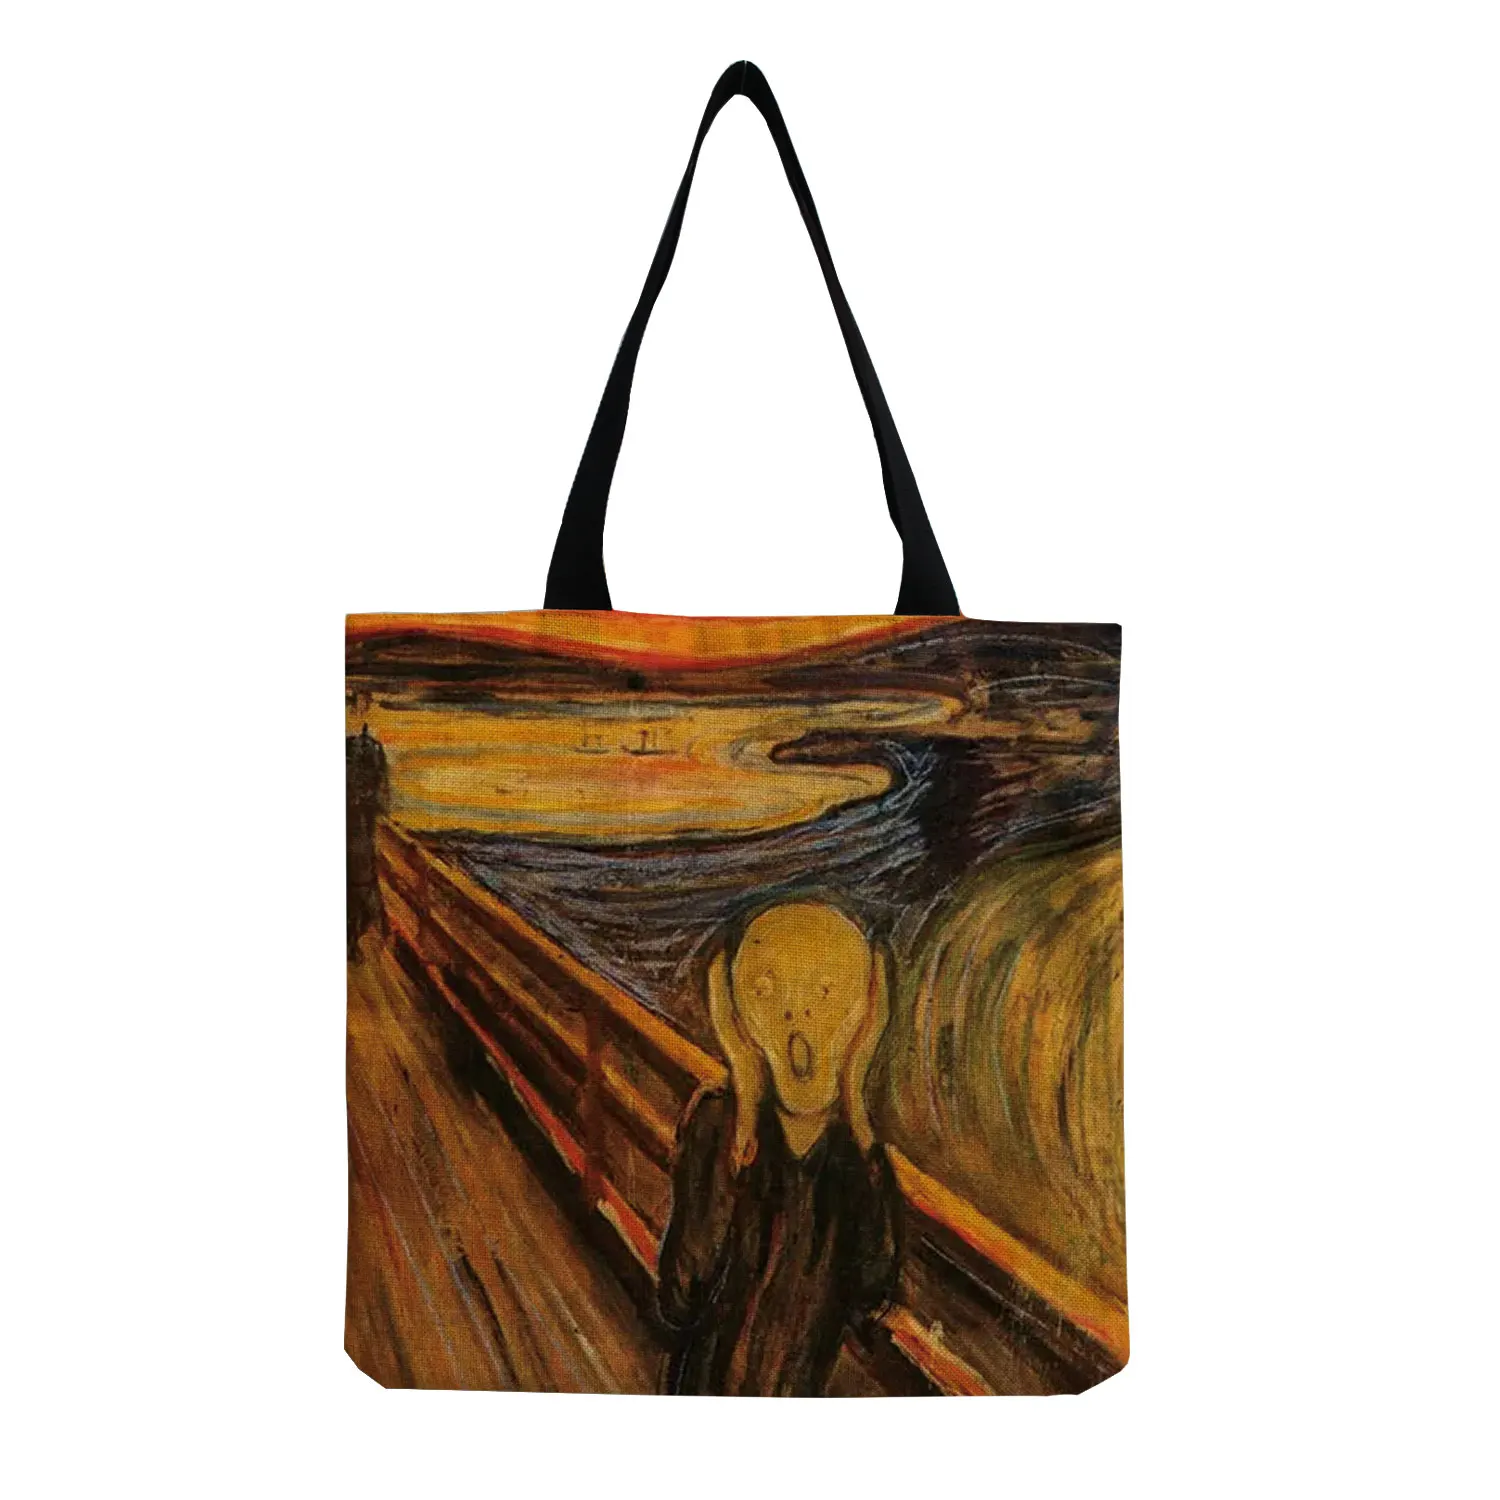 New Van Gogh Oil Painting Tote Bag Retro Art Fashion Travel Bag Women Portable Eco Shopping High Quality Foldable Handbag Ladies 